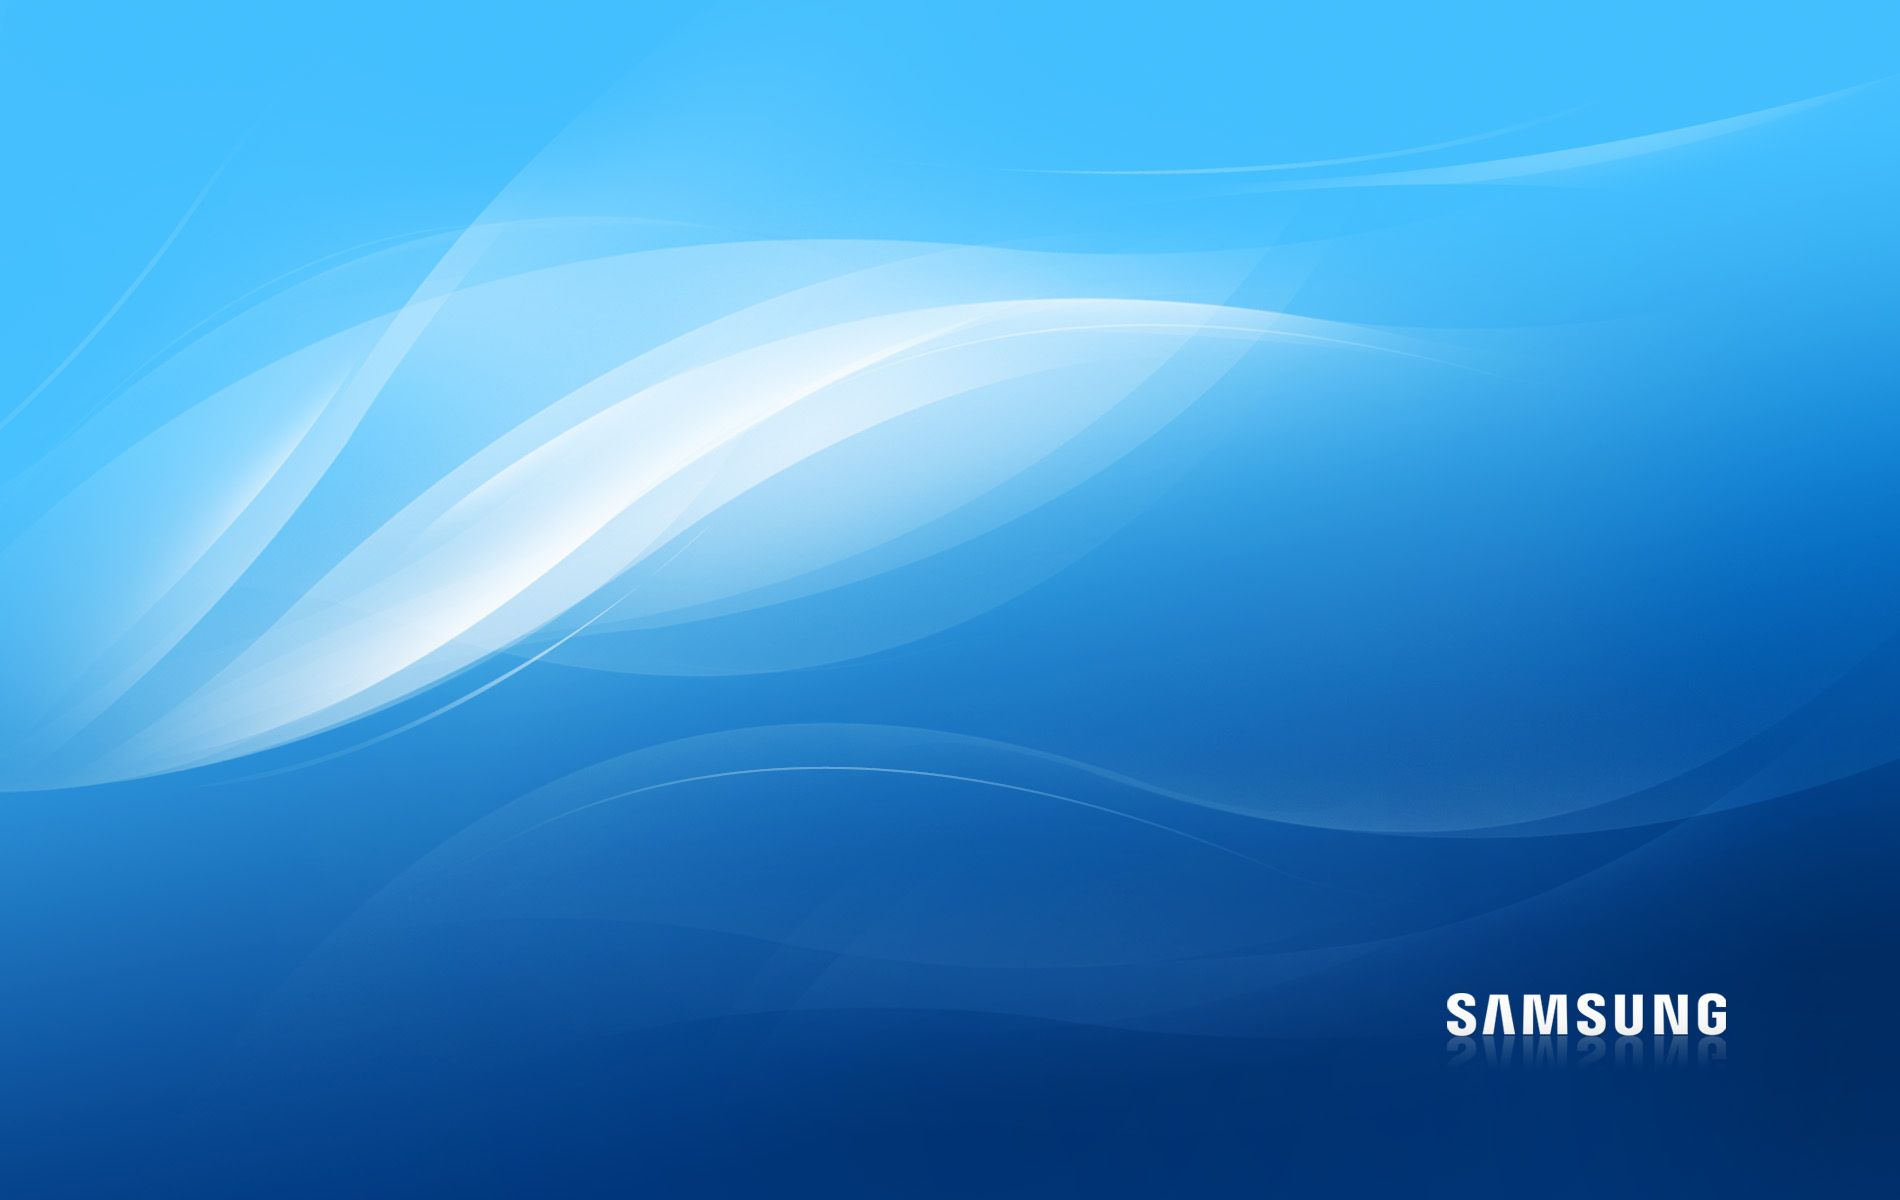 Samsung Ultrabook Wallpaper